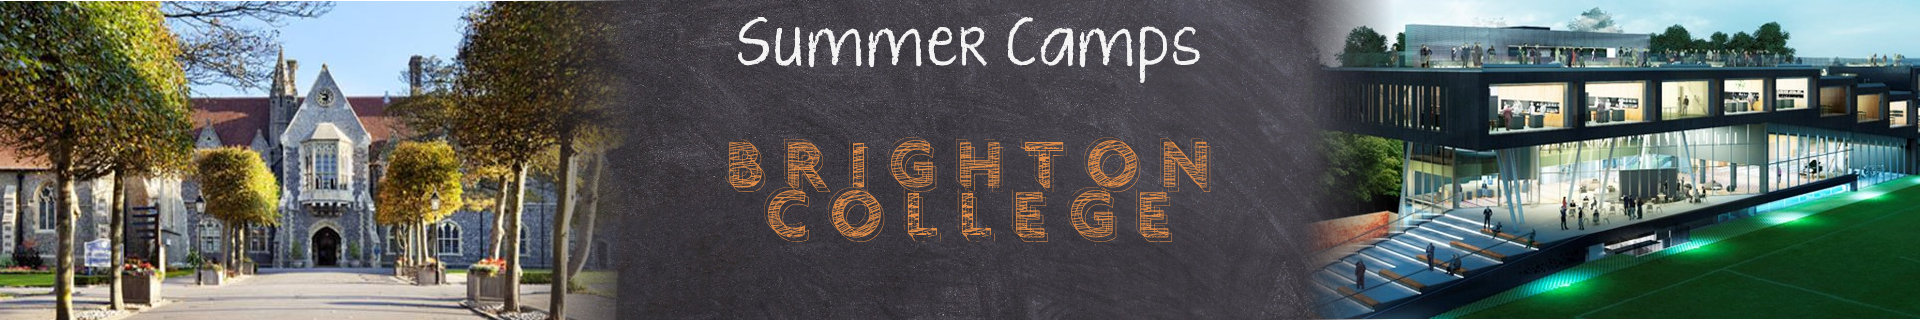 brighton-college-header